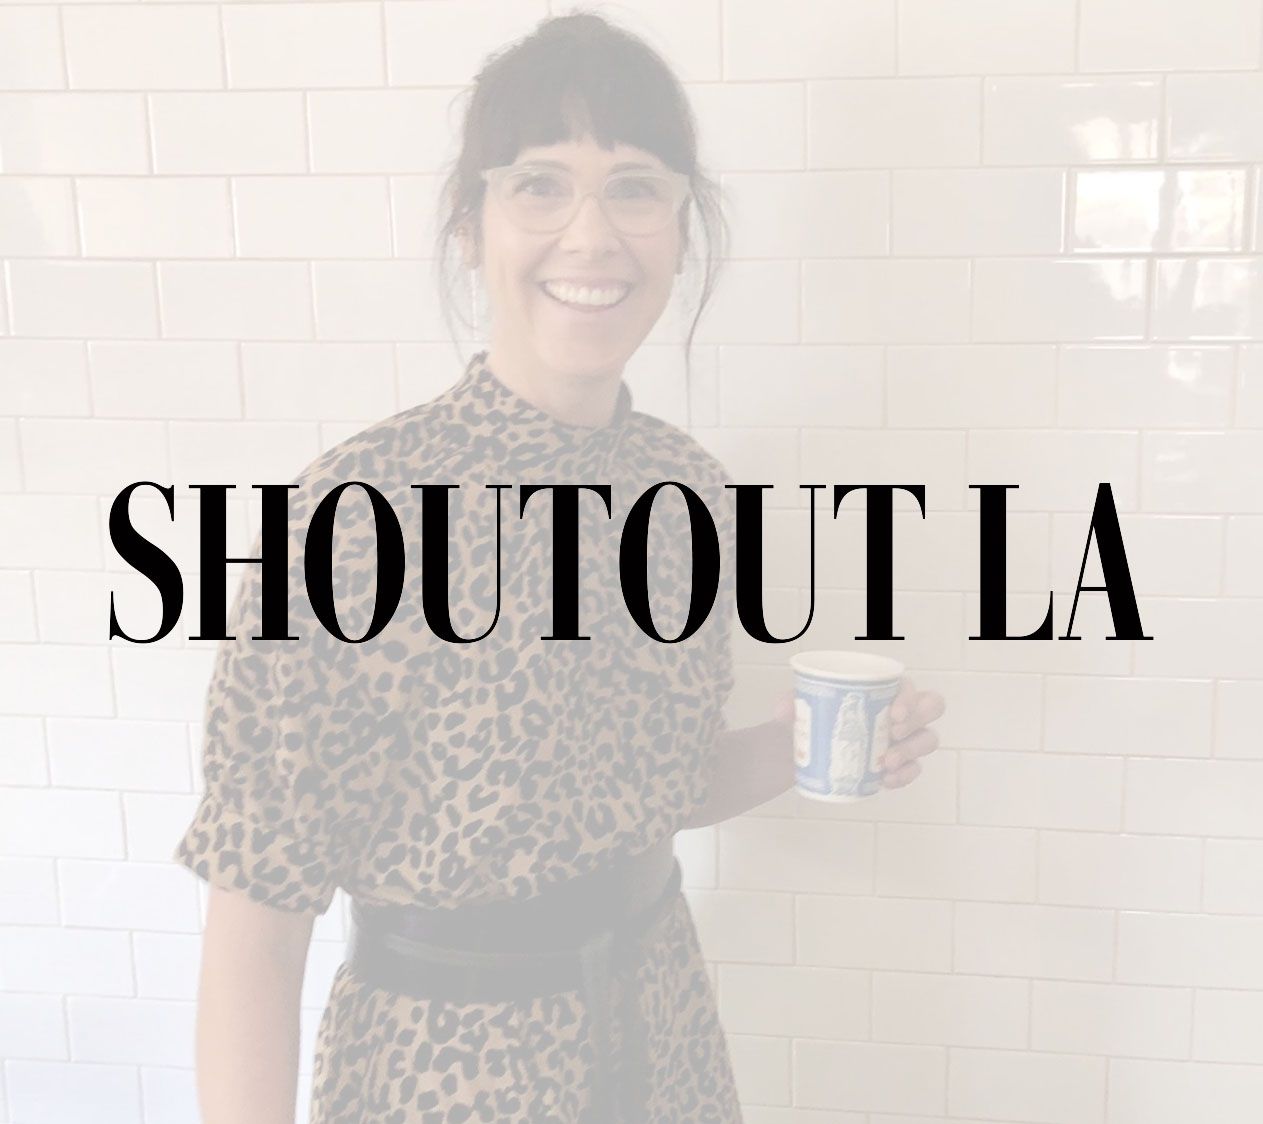 Shoutout LA media feature